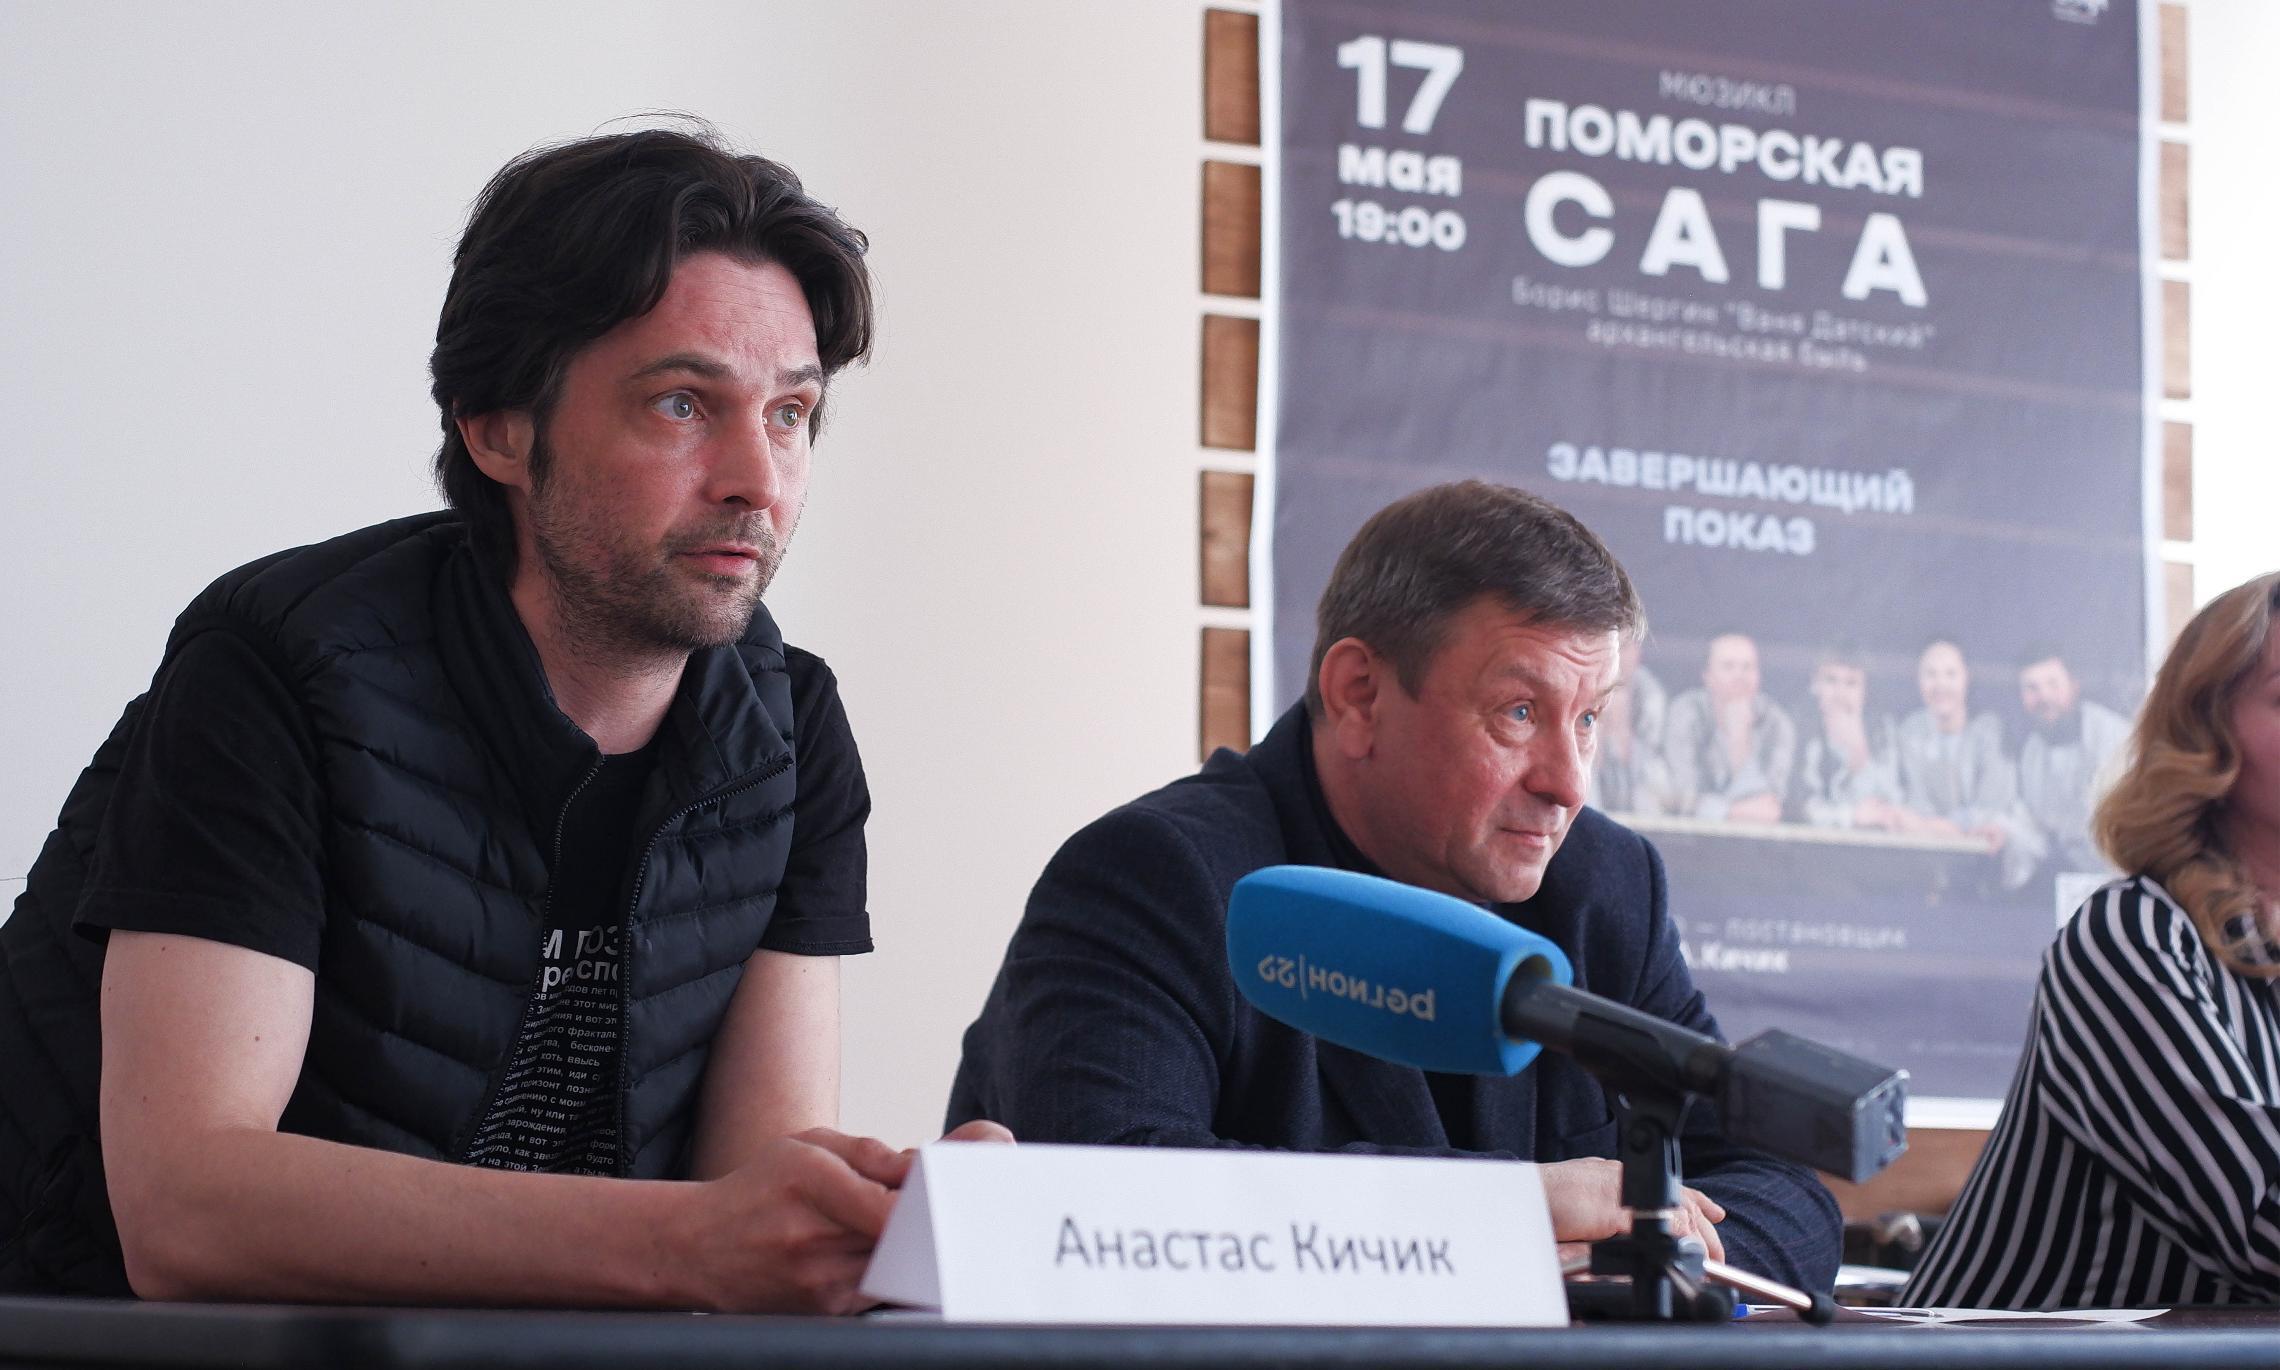 Анастас Кичик режиссёр проекта «Поморская сага»